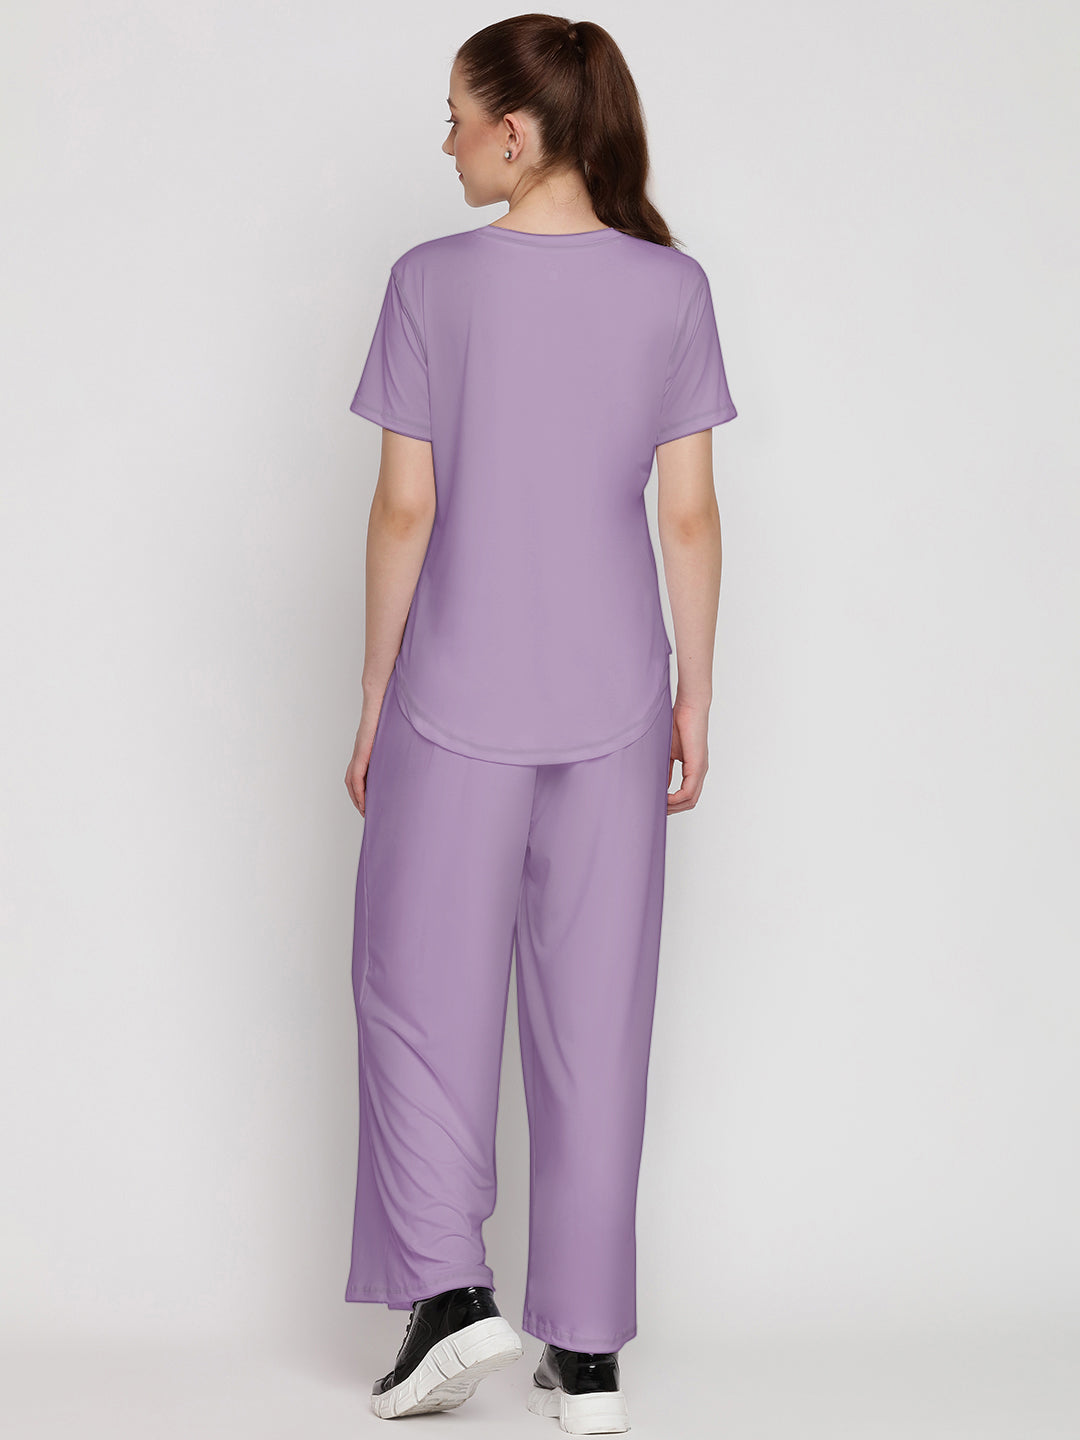 Harmony Pants & Tee Set - Purple